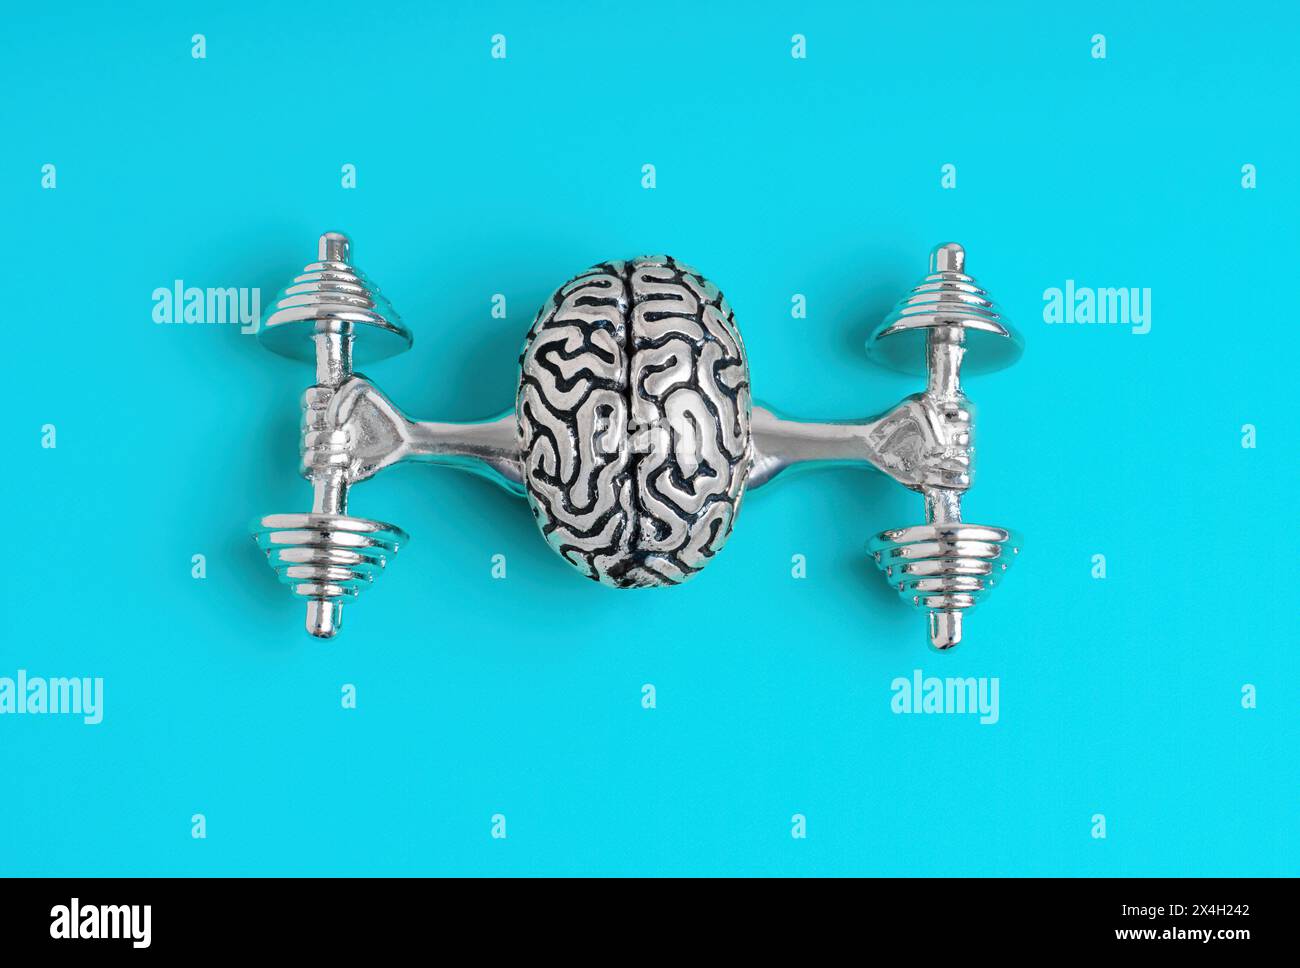 Statuetta del cervello umano in metallo che solleva manubri pesanti con braccia forti, vista dall'alto. Concetto correlato all'esercizio mentale. Foto Stock